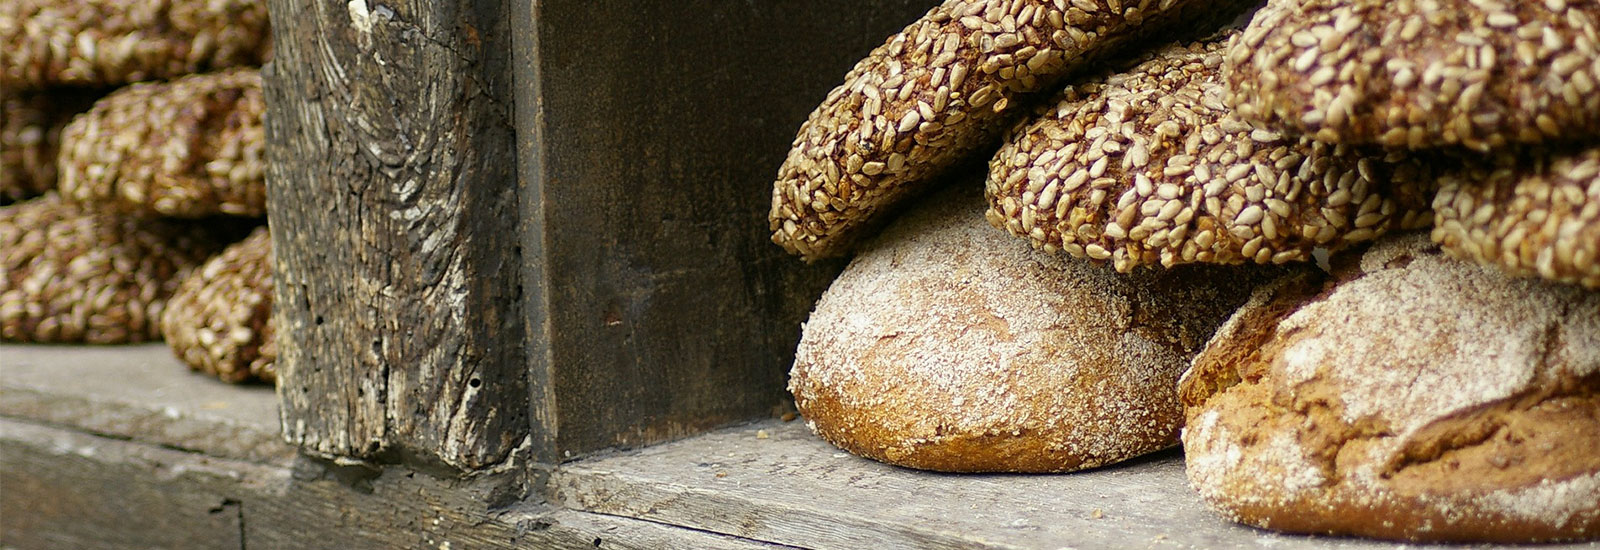 chleb żytni - dlaczego warto go jeść